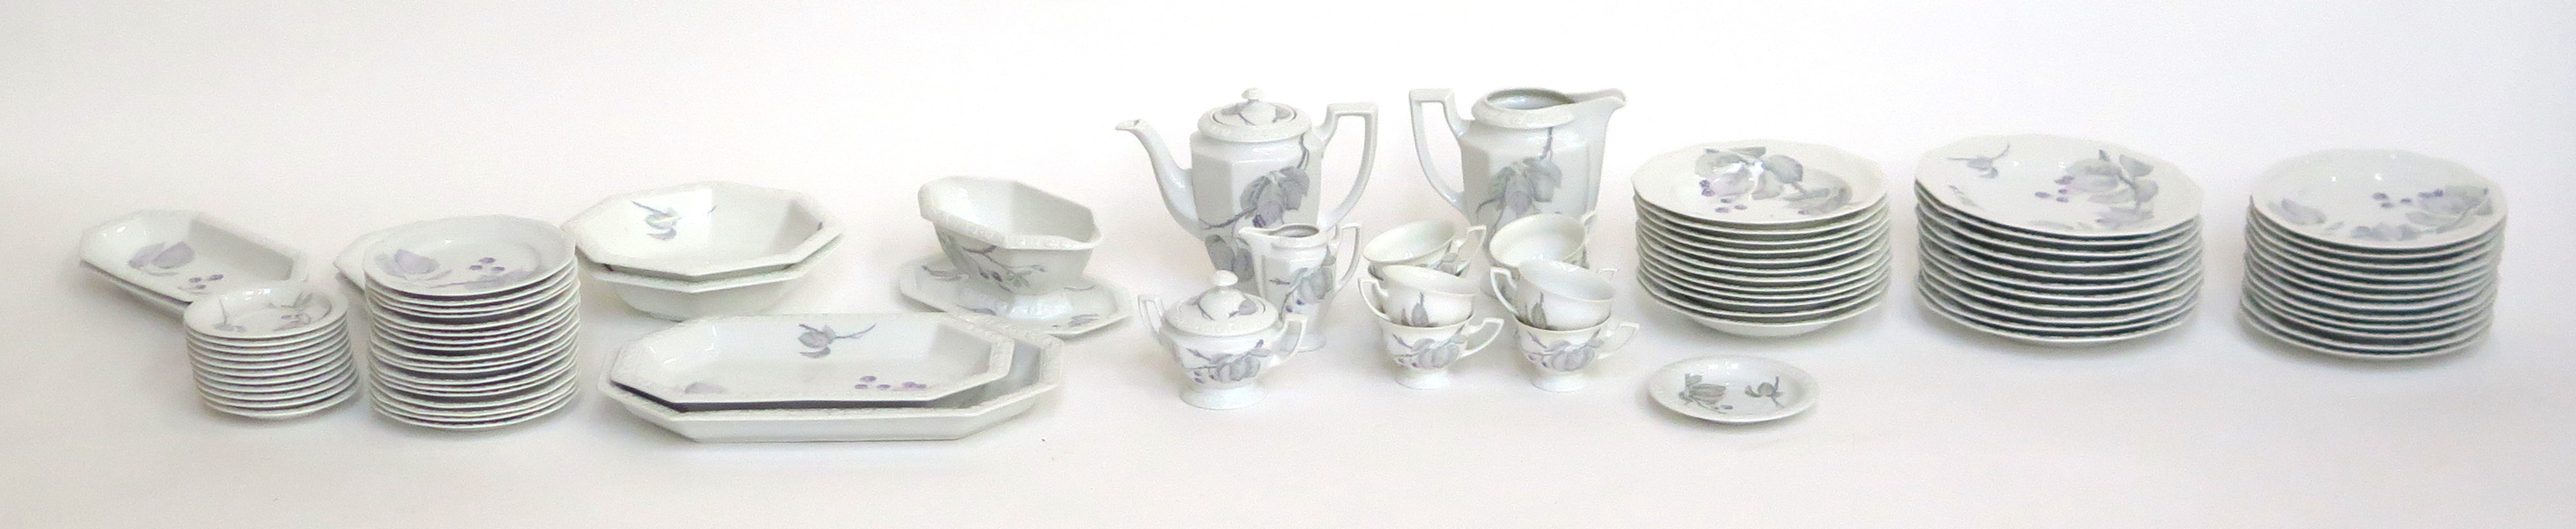 Mat- och kaffeservis, porslin, Maria Björnbär, cirka 70 delar, design 1916, _23780a_lg.jpeg